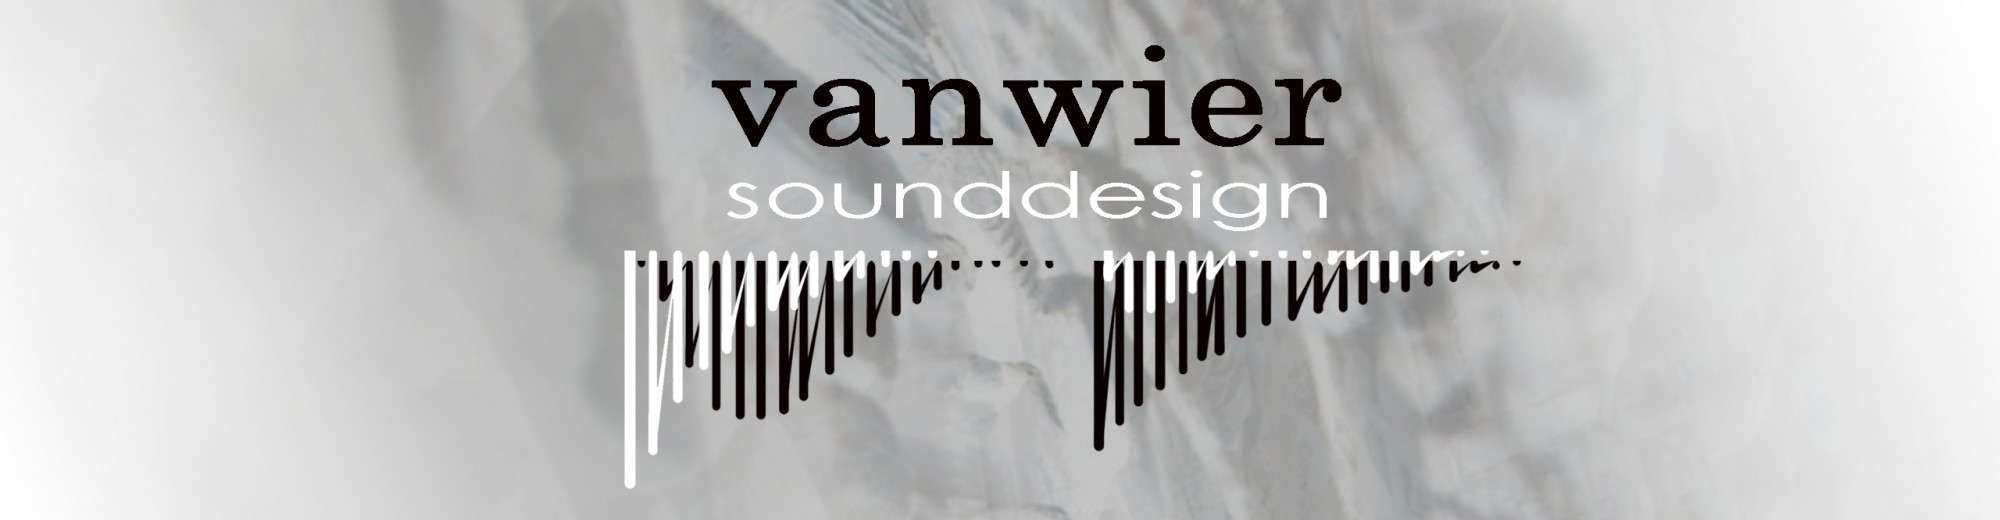 Van Wier Sounddesign